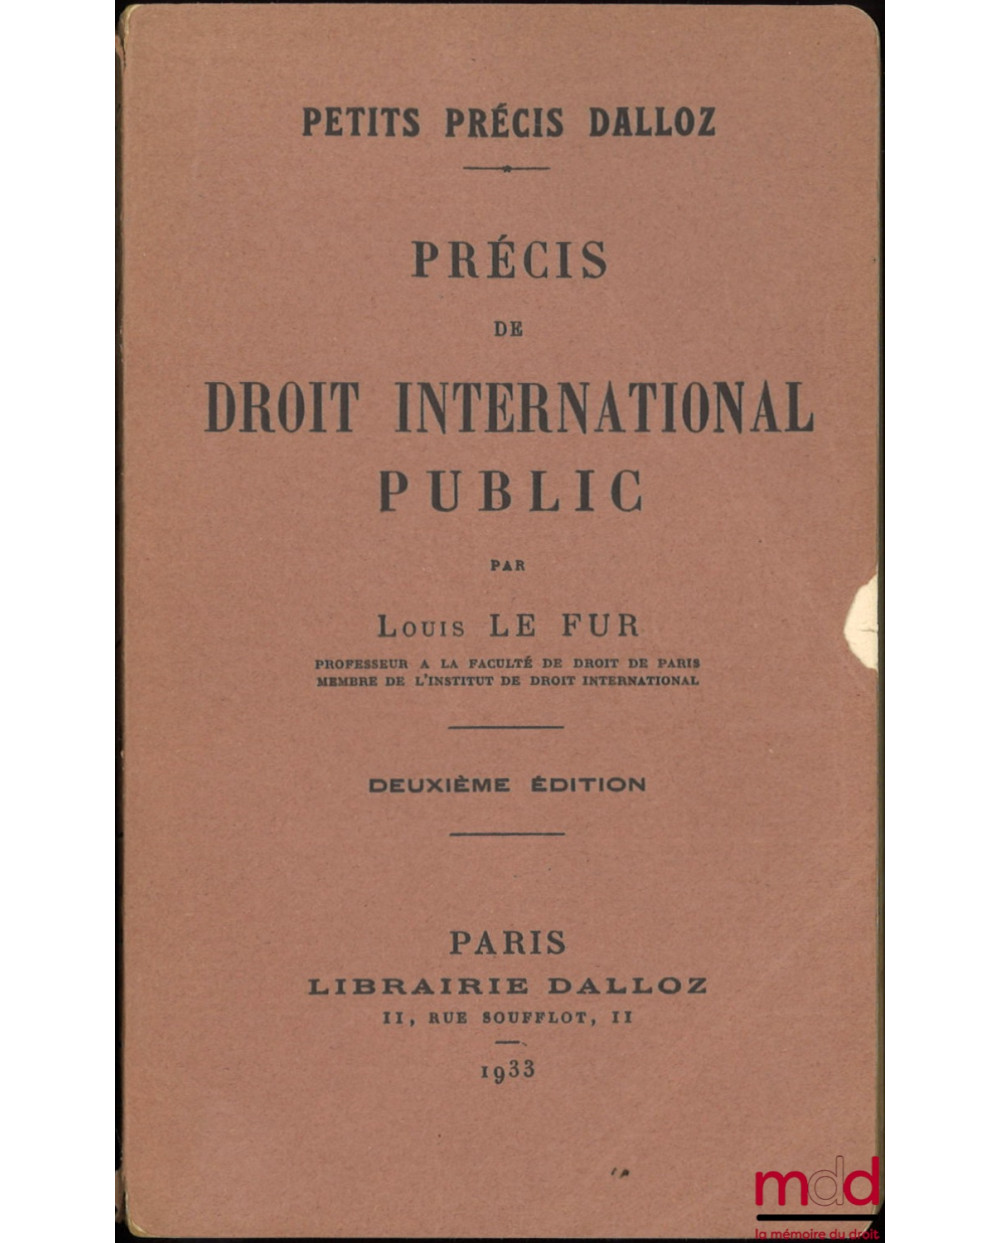 PRÉCIS DE DROIT INTERNATIONAL PUBLIC, 2e éd., coll. Petits précis Dalloz